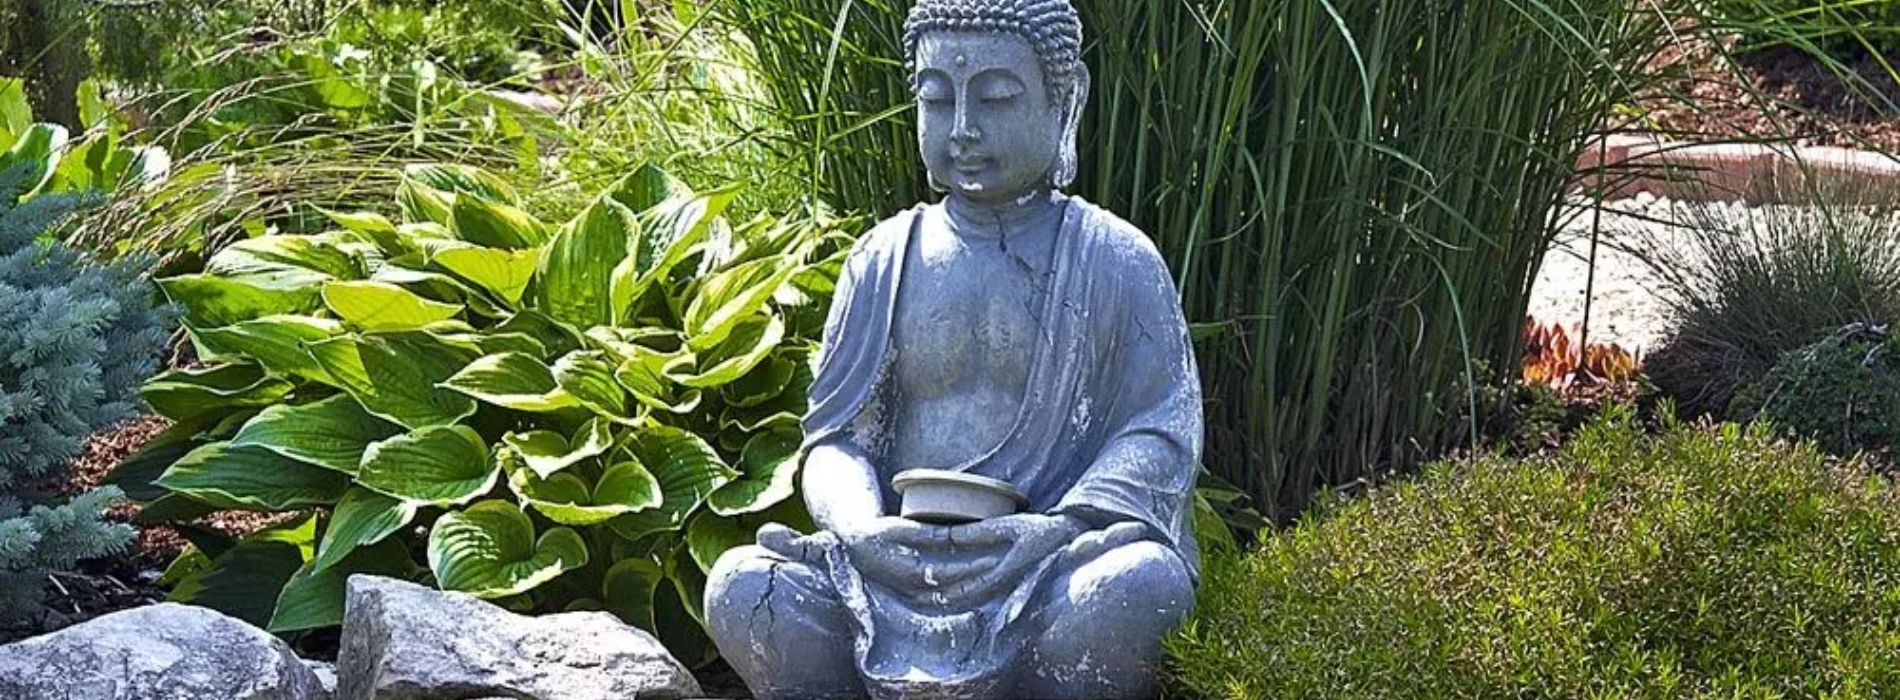 Comment orienter un bouddha dans son jardin ?